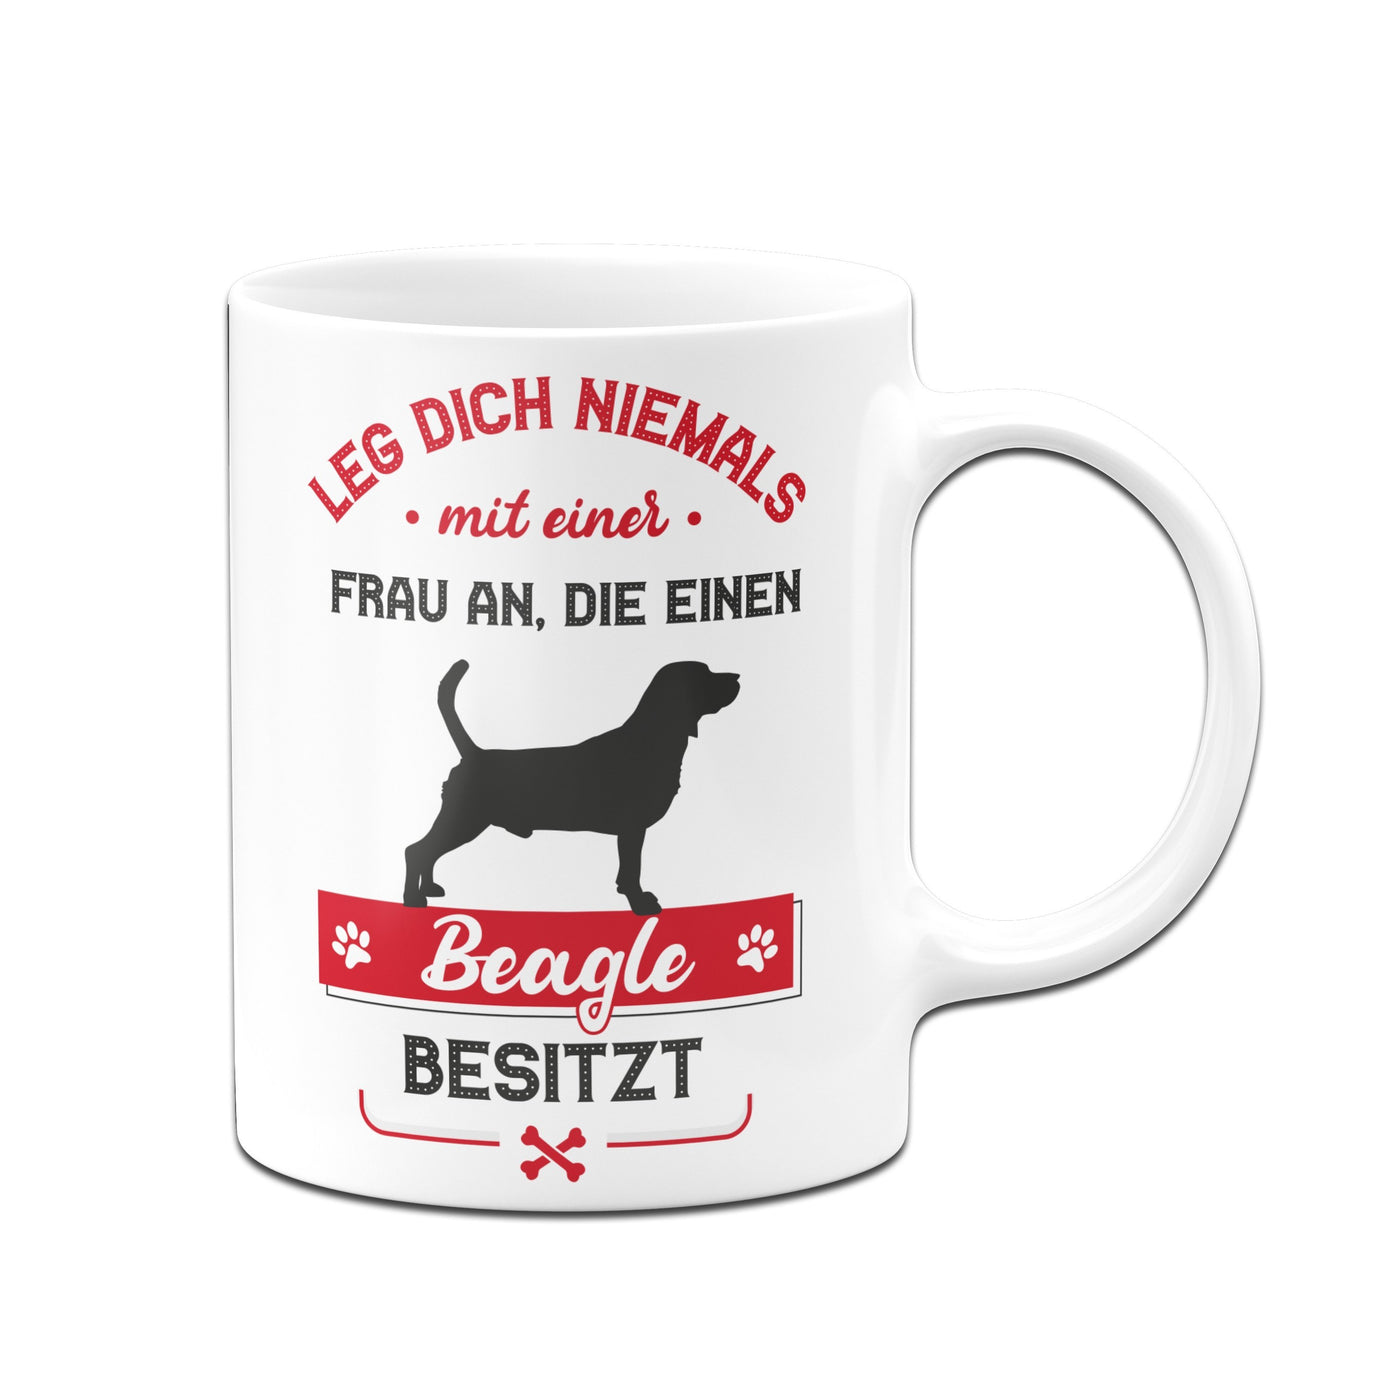 Bild: Tasse - Leg dich niemals mit einer Frau an, die einen Beagle besitzt Geschenkidee